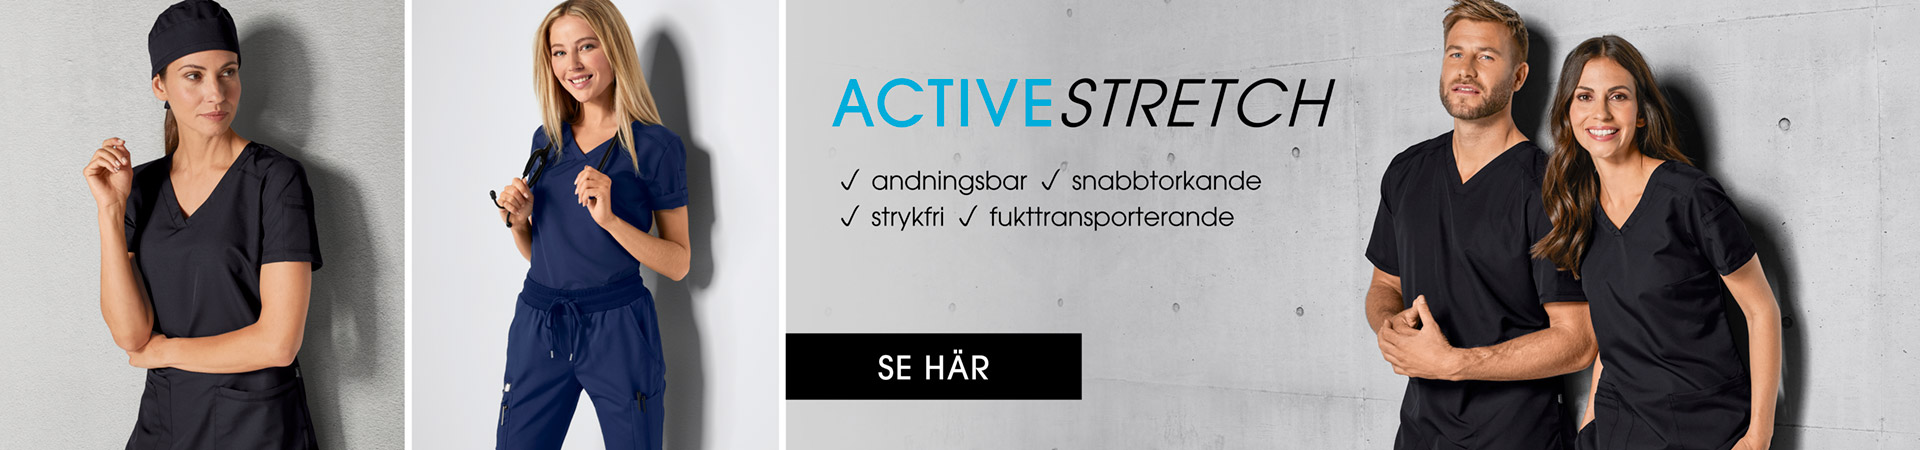 Arbetskläder Active Stretch - Teamkläder 7days